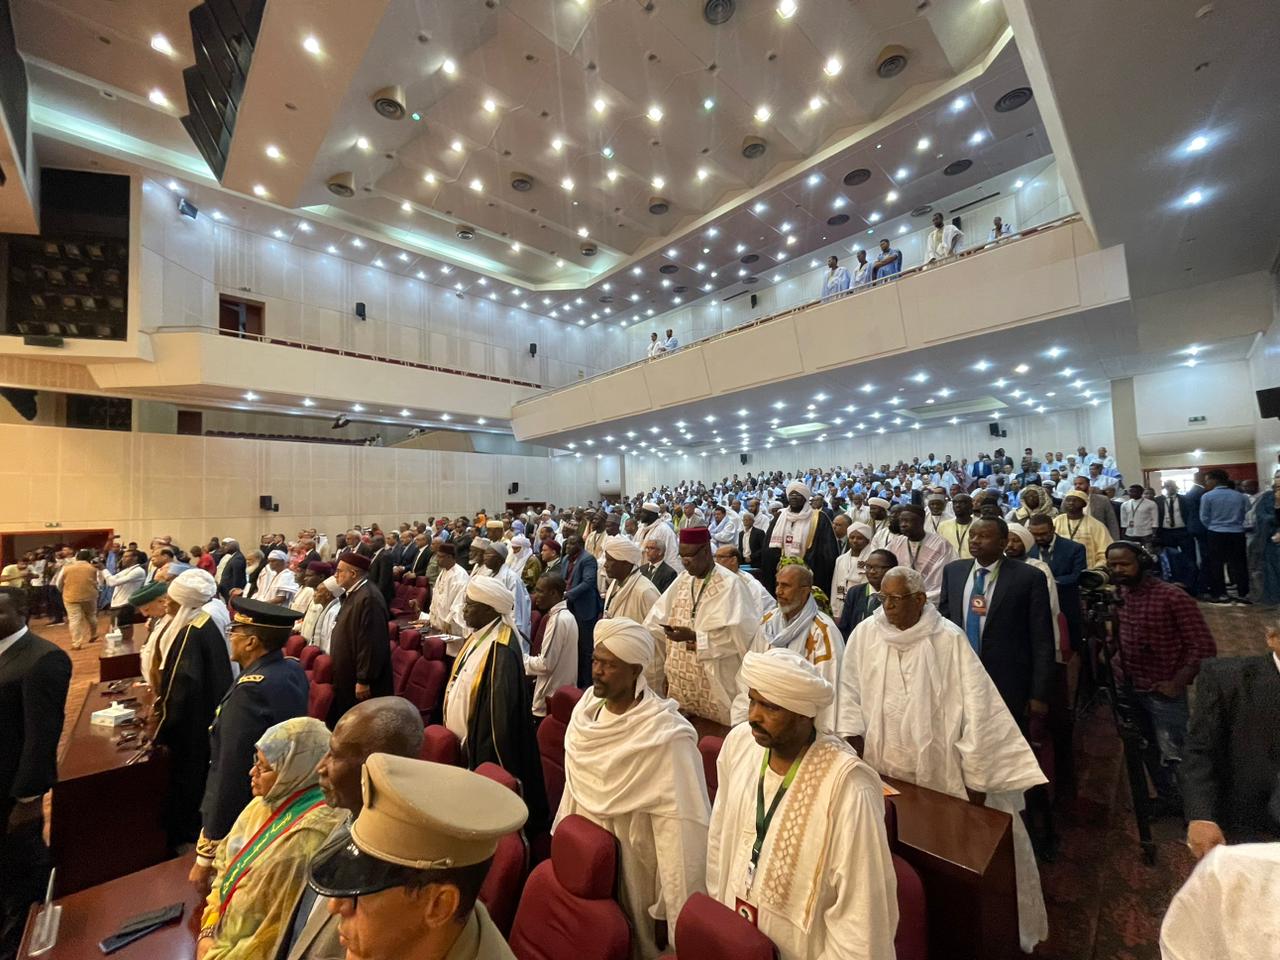  اللقاء التشاوري لعلماء الساحل والسودان الذي يعقده المؤتمر الأفريقي للسلم بالعاصمة الموريتانية نواكش